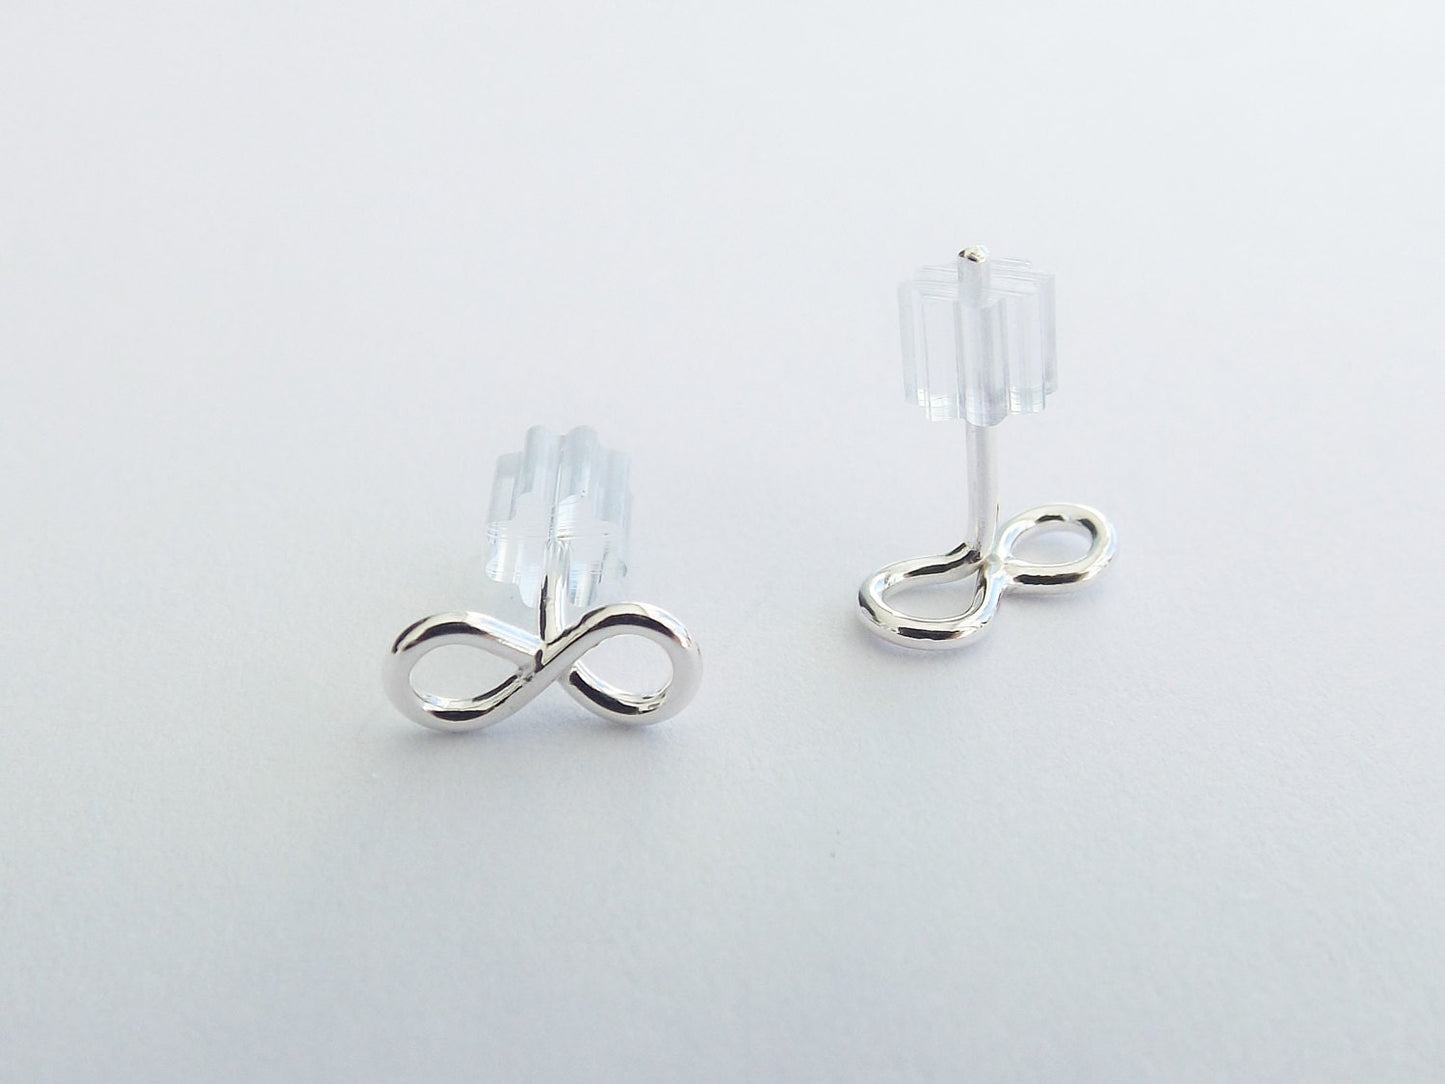 Simple Earrings, Infinity Earrings, Tiny Earrings, Post Earrings, Stud Earrings, Metal Earrings, Modern Jewelry, Minimalist